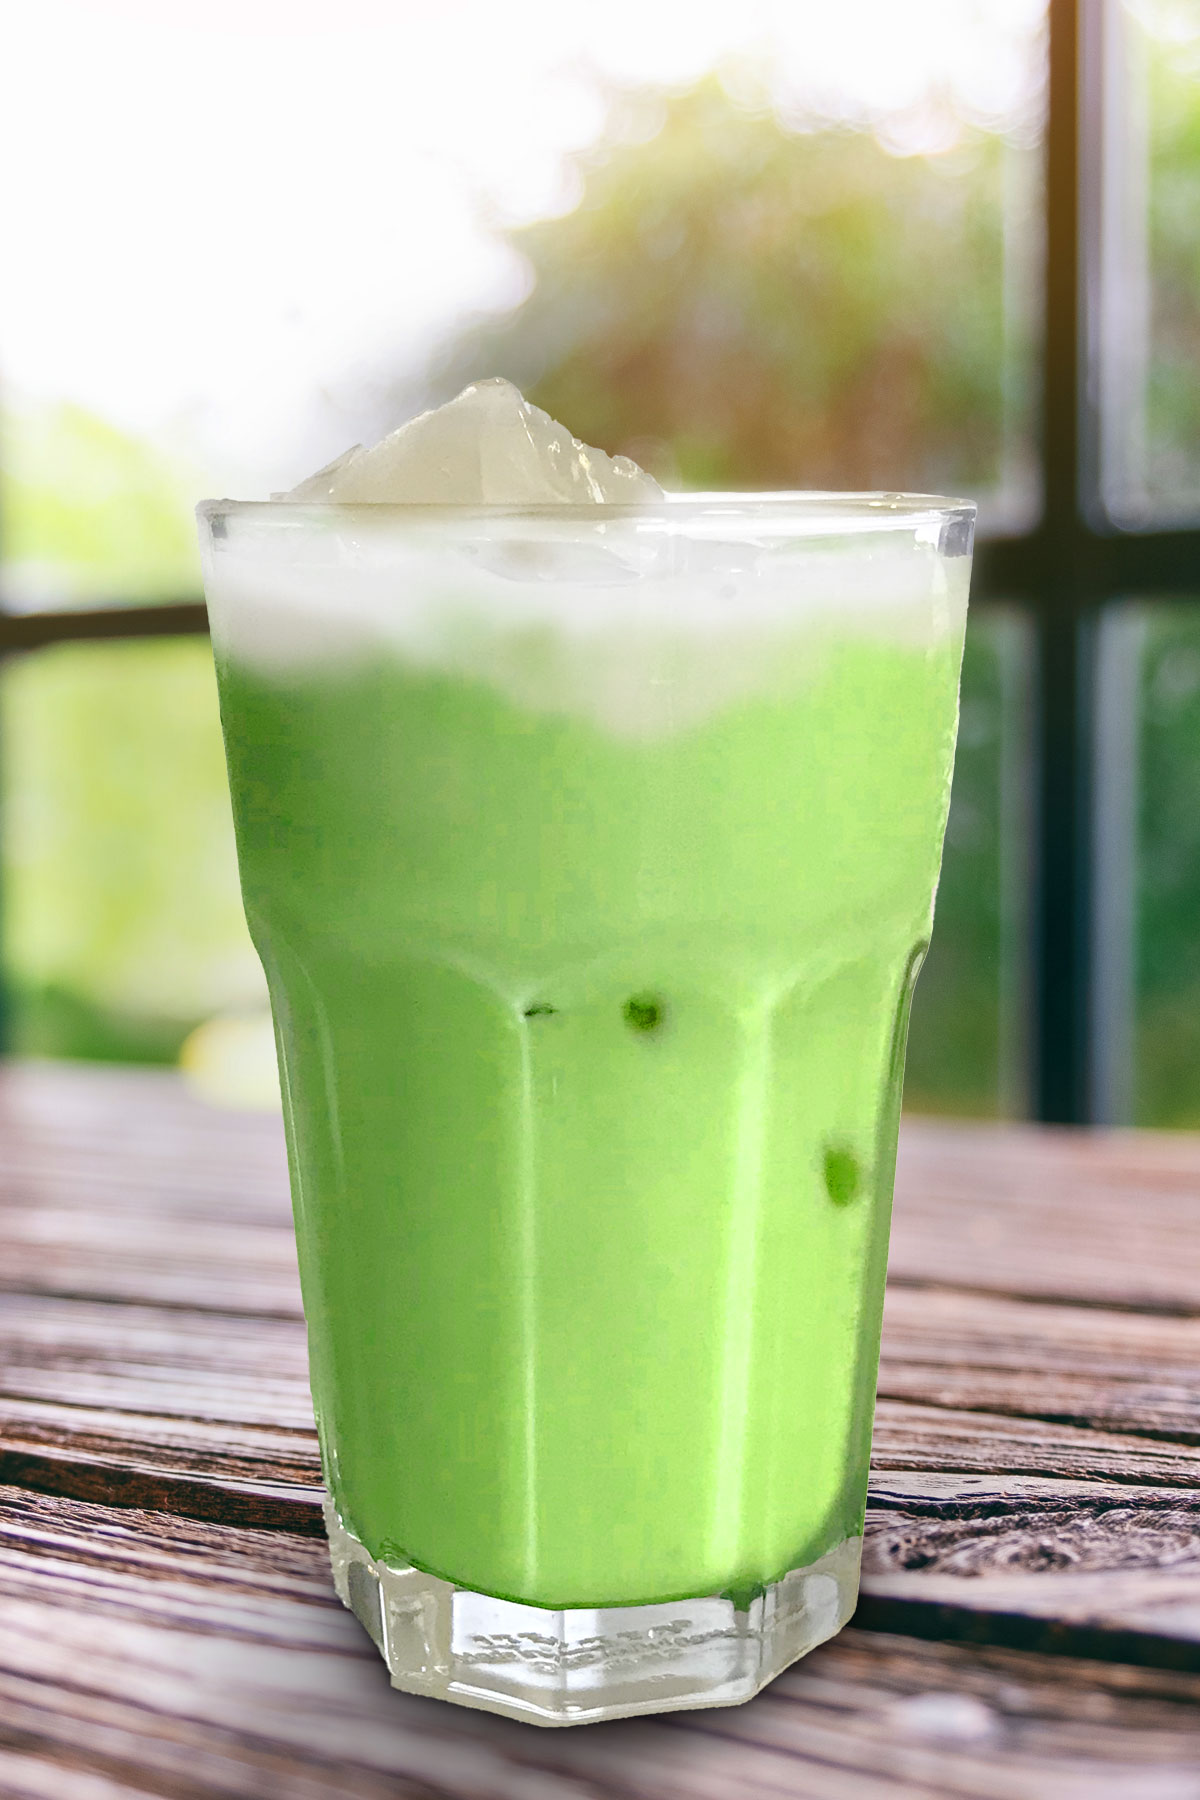 Homemade Thai Green Tea Recipe Without Thai Tea Mix (Updated 2022)